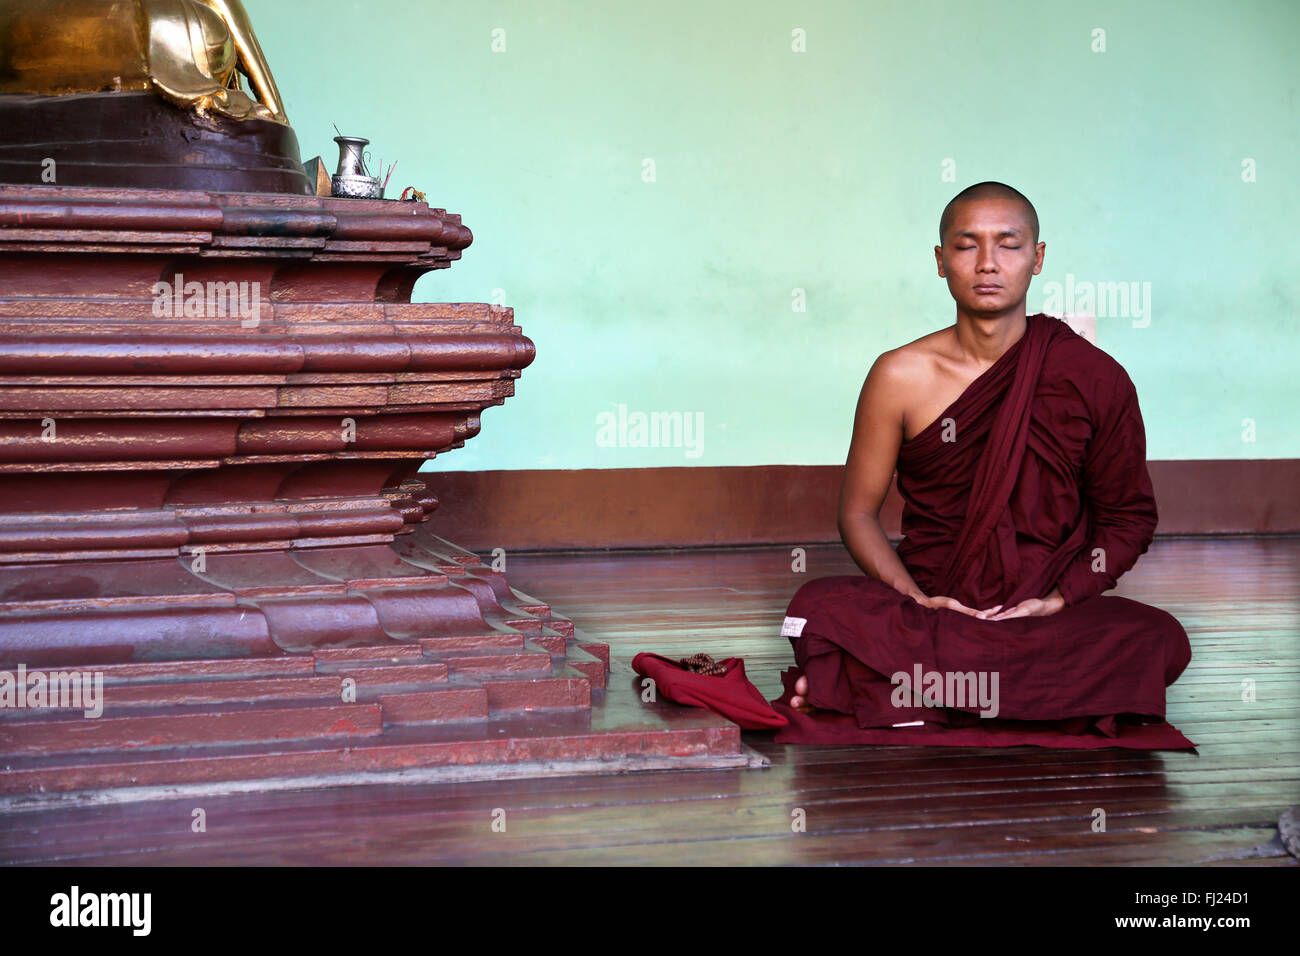 Buddhist monk meditating at Shwedagon pagoda, Myanmar Stock Photo